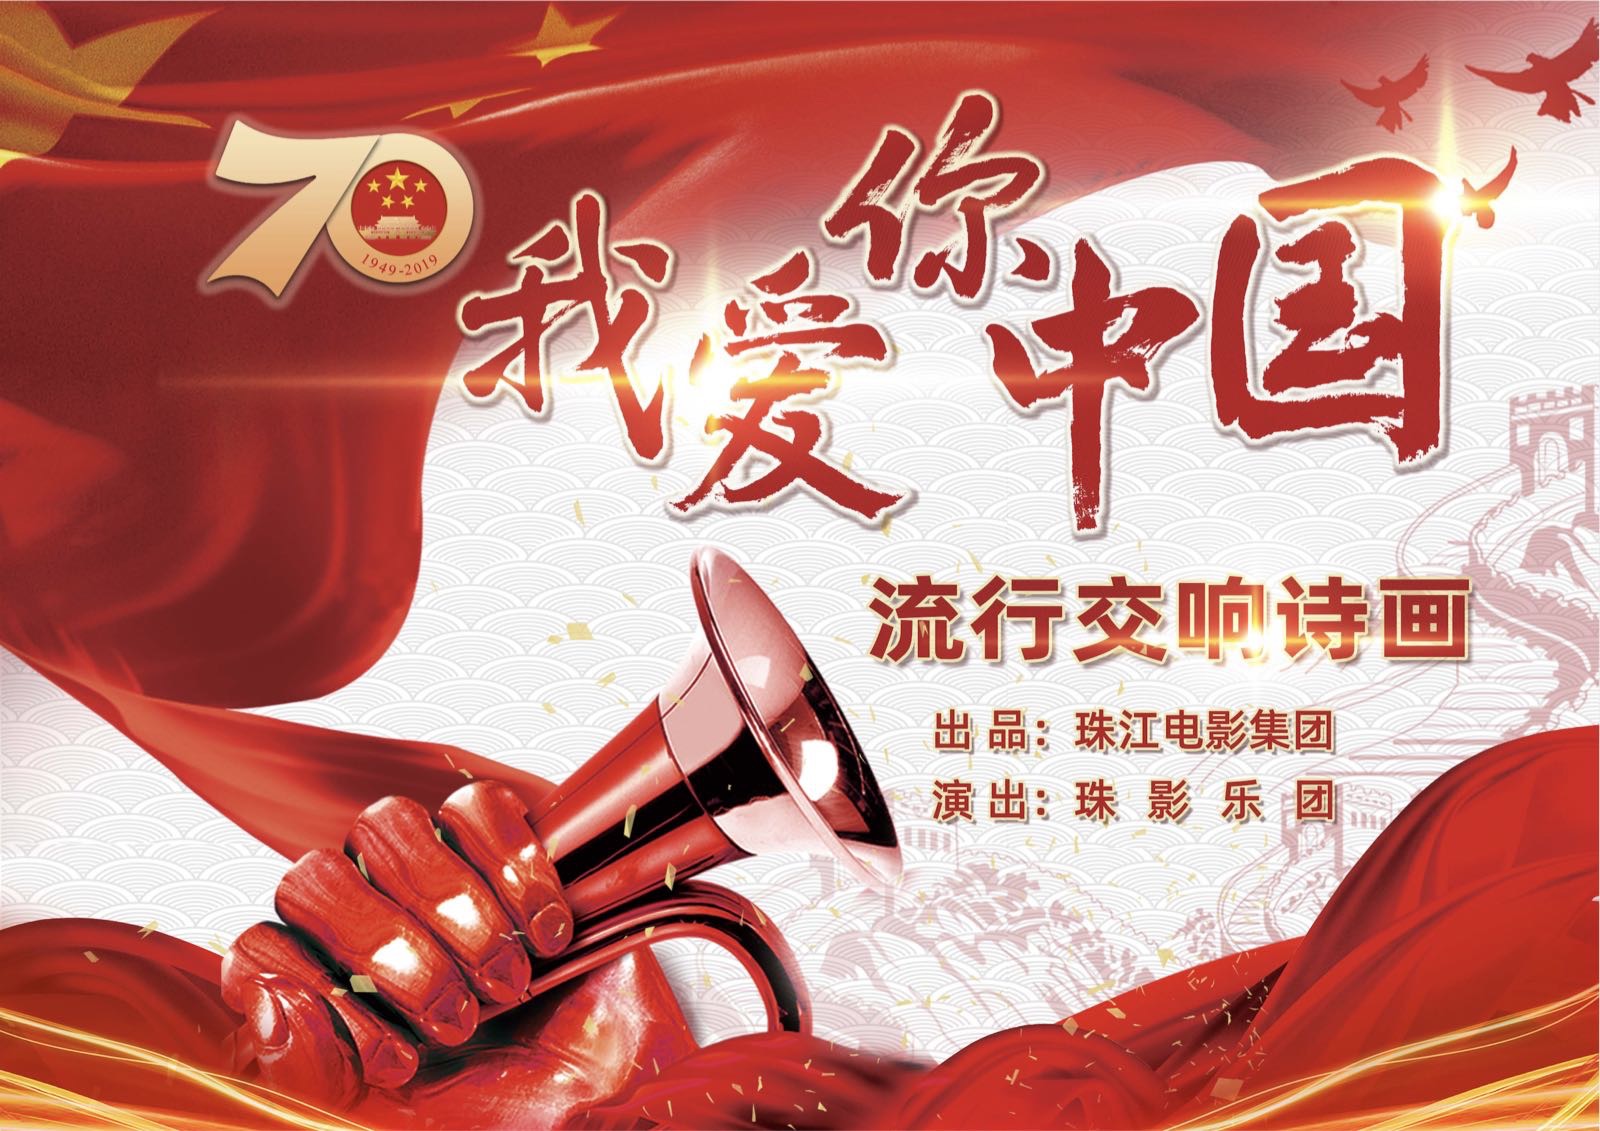 大型流行交响诗画《我爱你中国》于9月16日晚上在广州珠影乐团上演